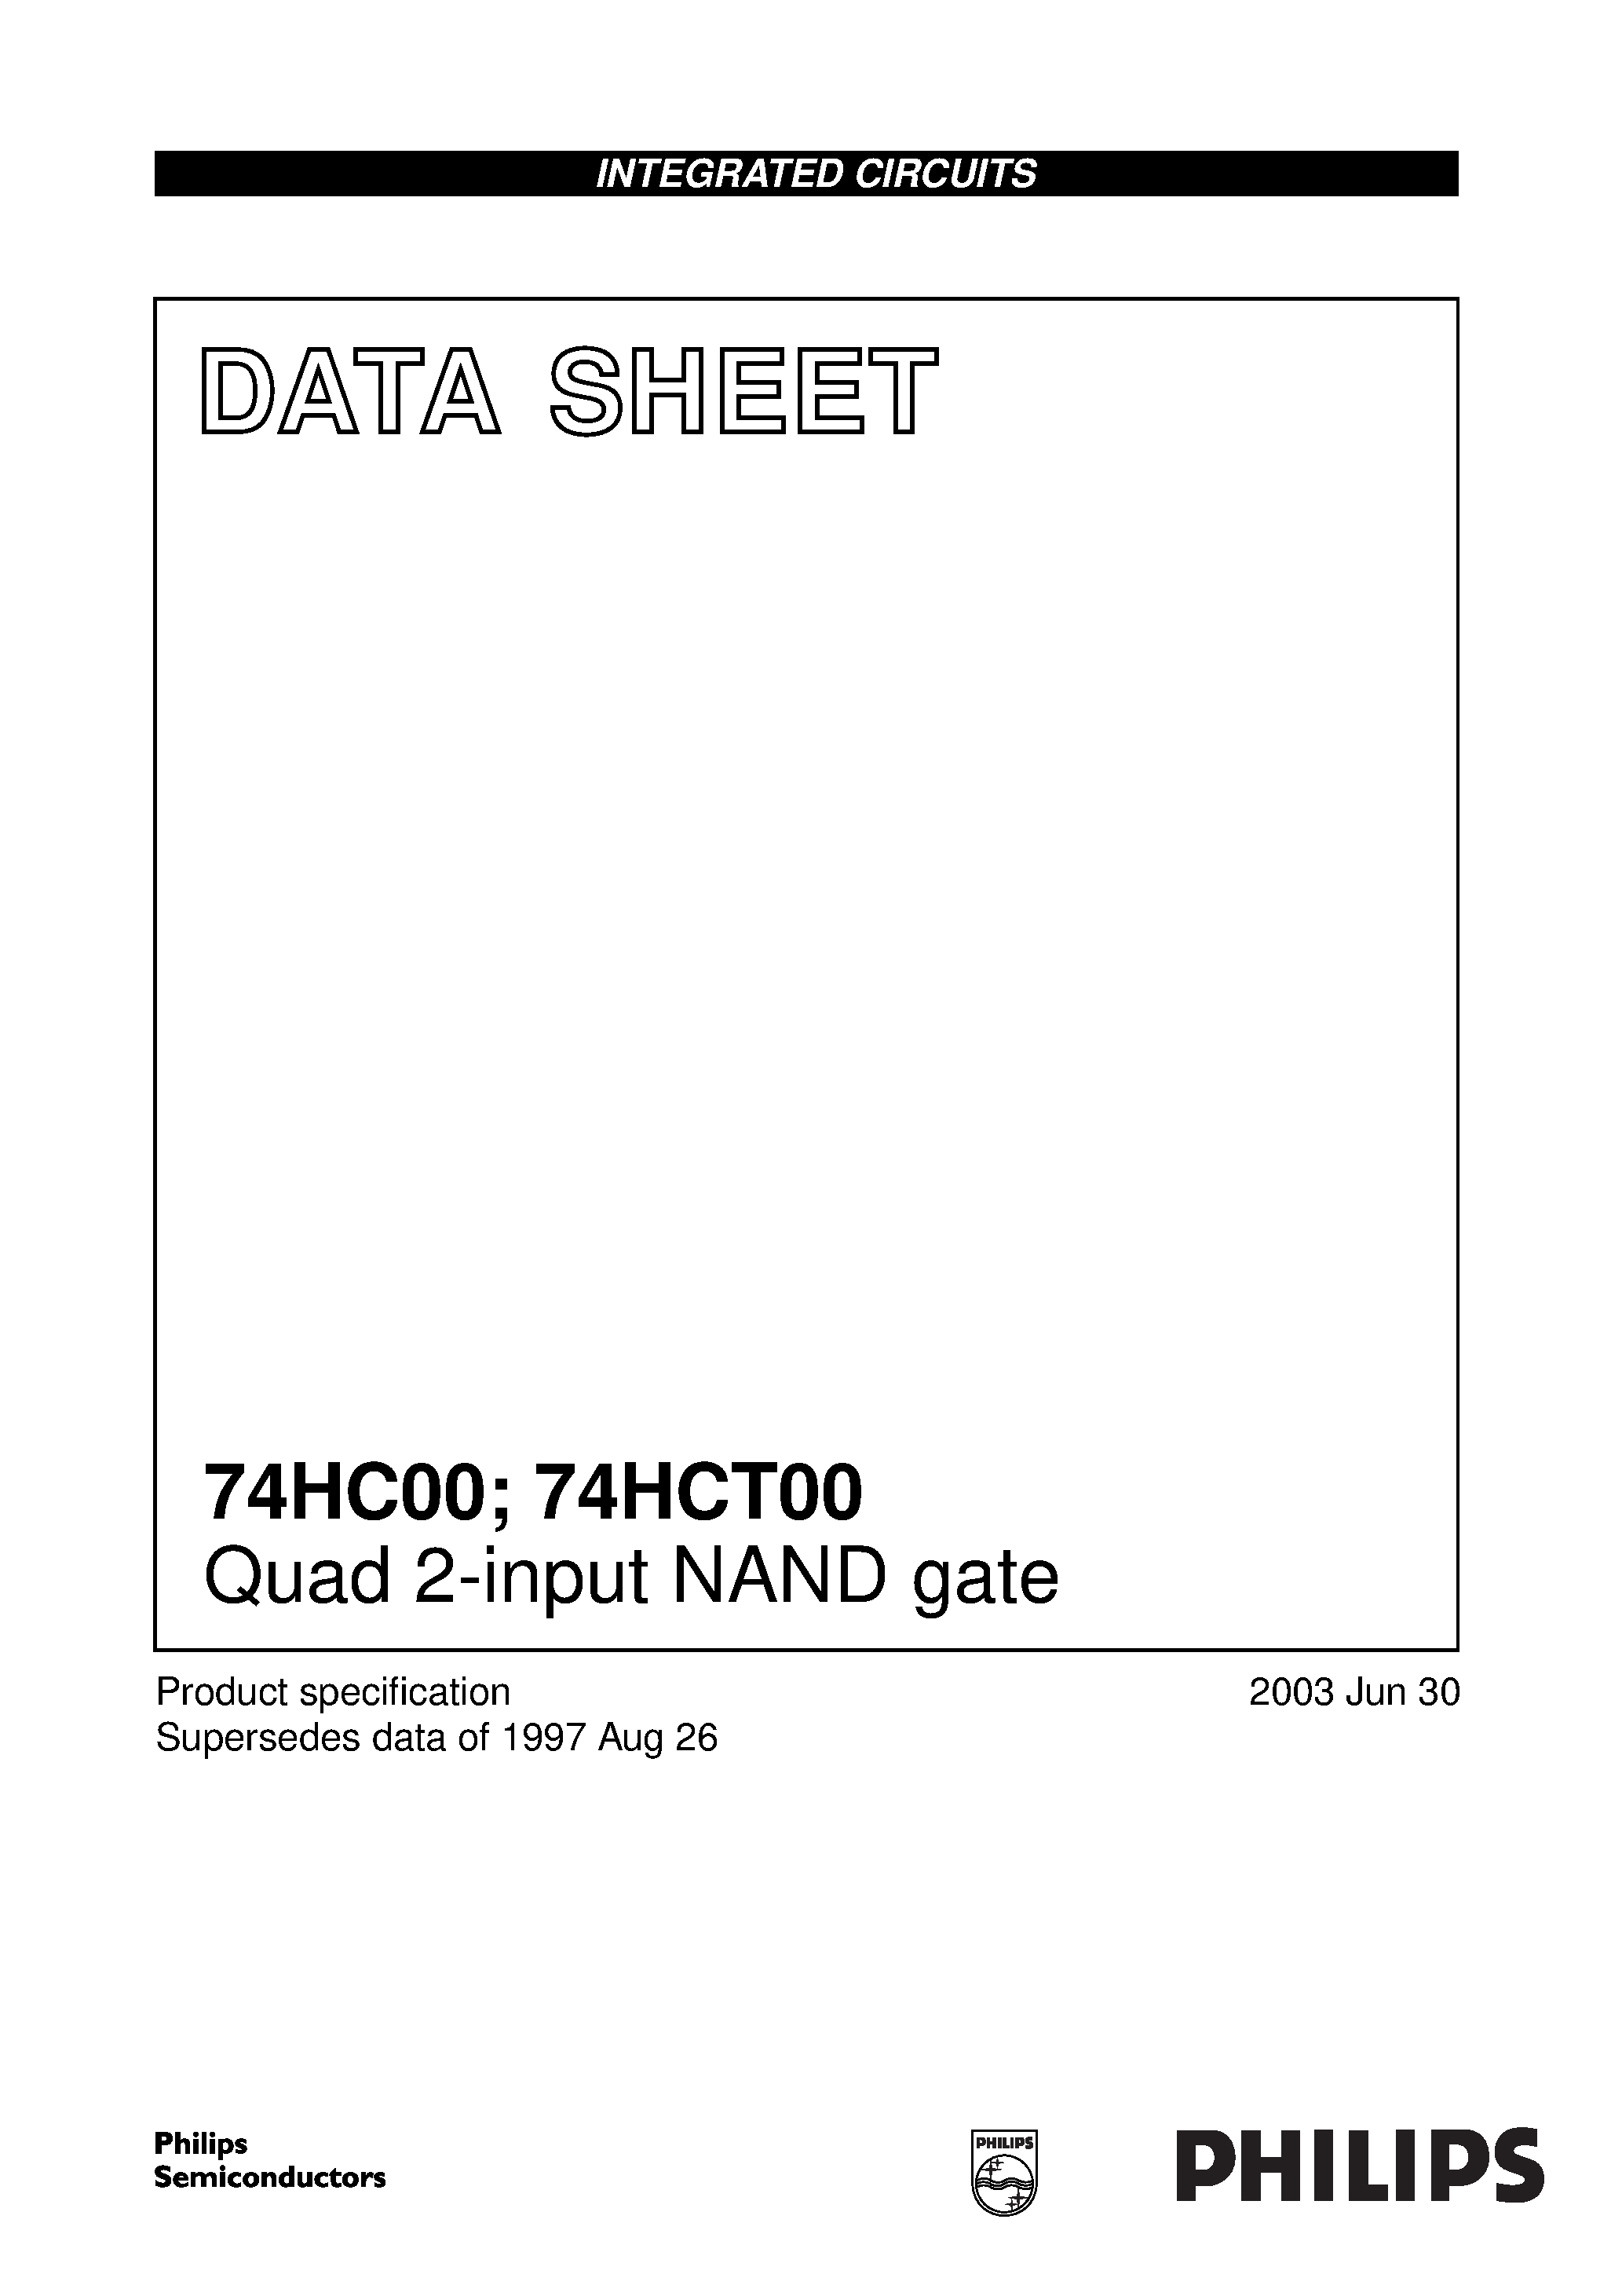 Даташит 74HCT00DB - Quad 2-input NAND gate страница 1